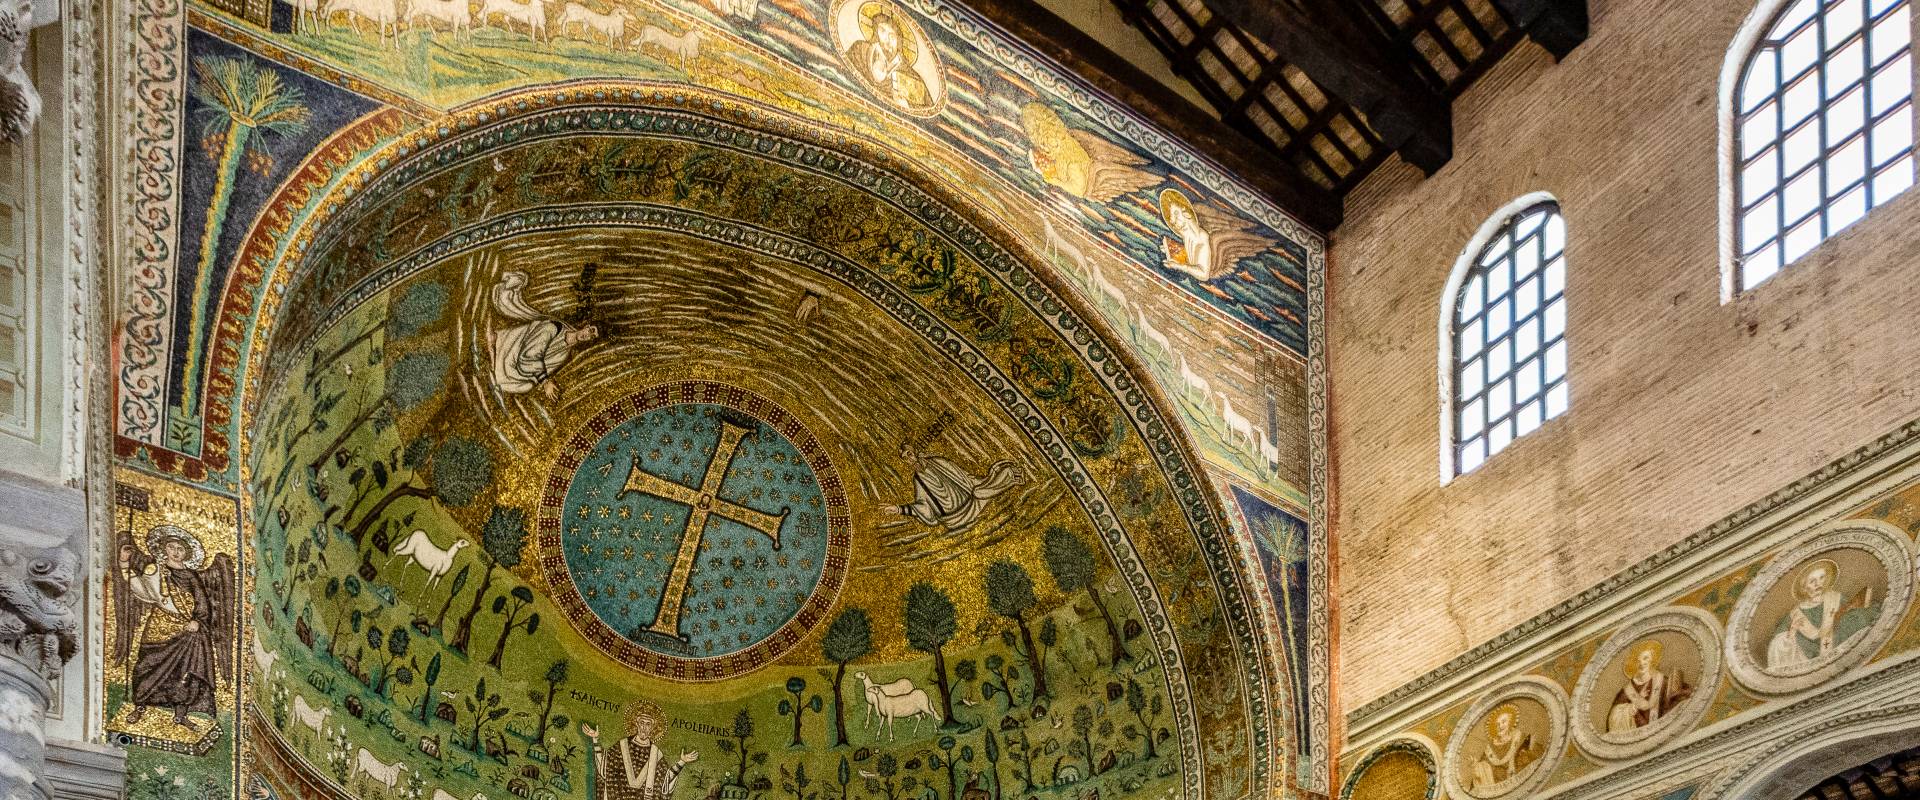 Je009 Basilica di Sant'Apollinare in Classe - Ravenna - photo by Vanni Lazzari